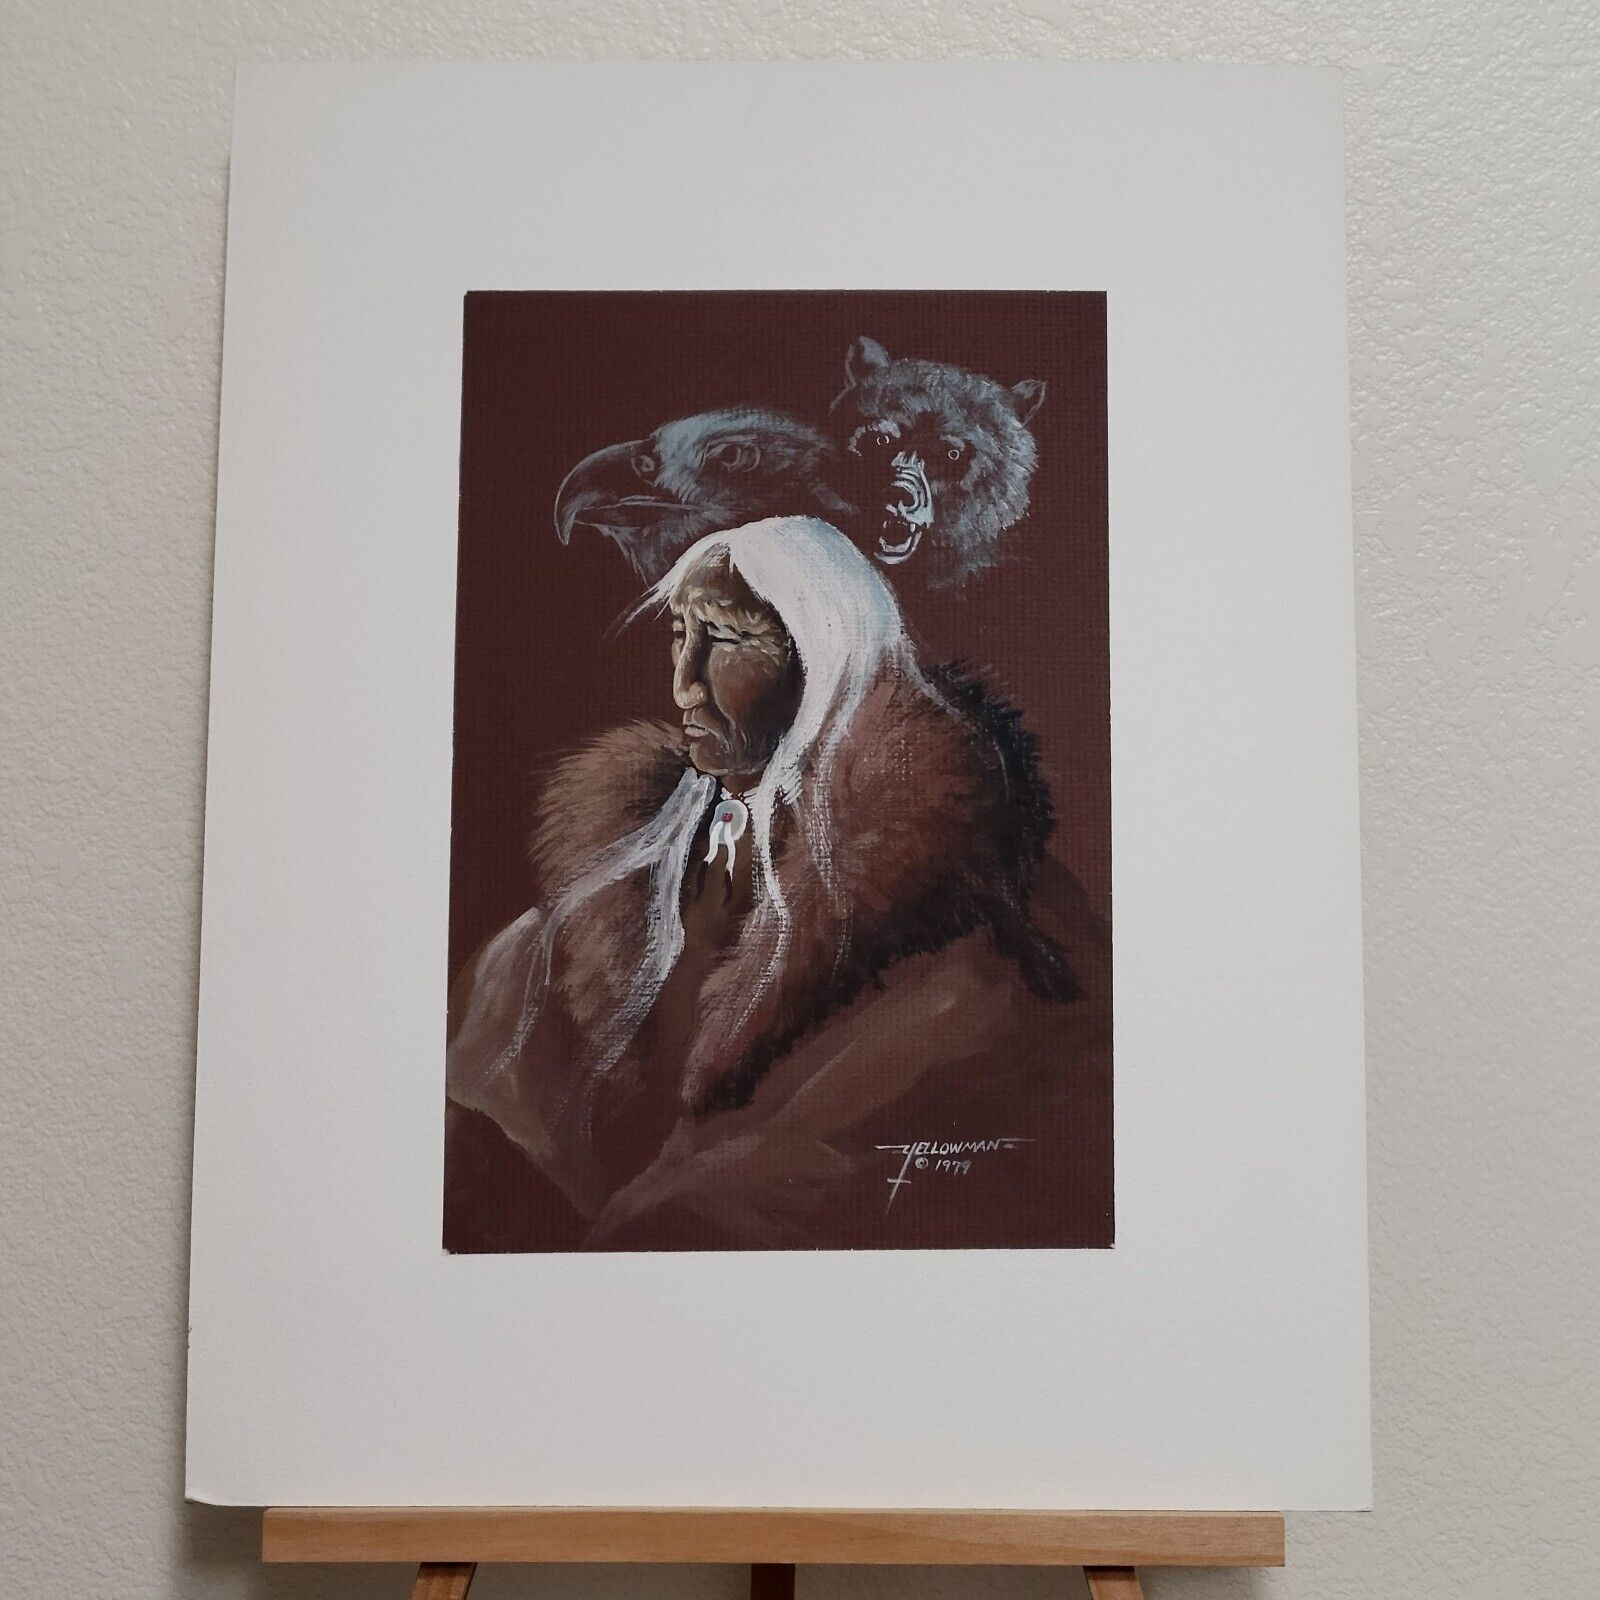 Bemic Nelson Yellowman Navajo Gauche Painting 1979 Native American Art 14x10in